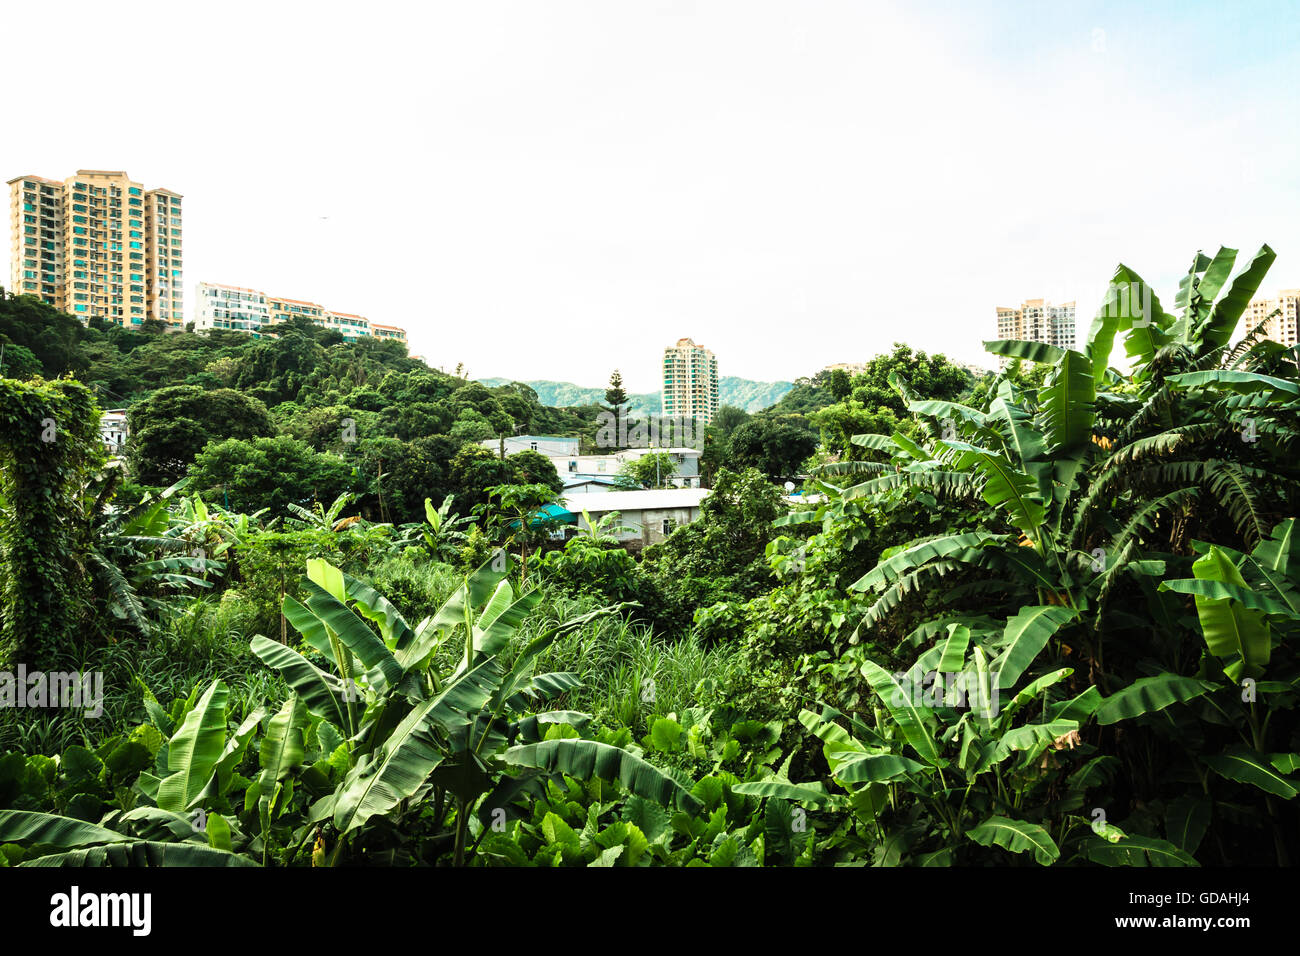 Village vert avec des plantes tropicales en face d'un bâtiment sur l'île de Lantau, Hong Kong Banque D'Images